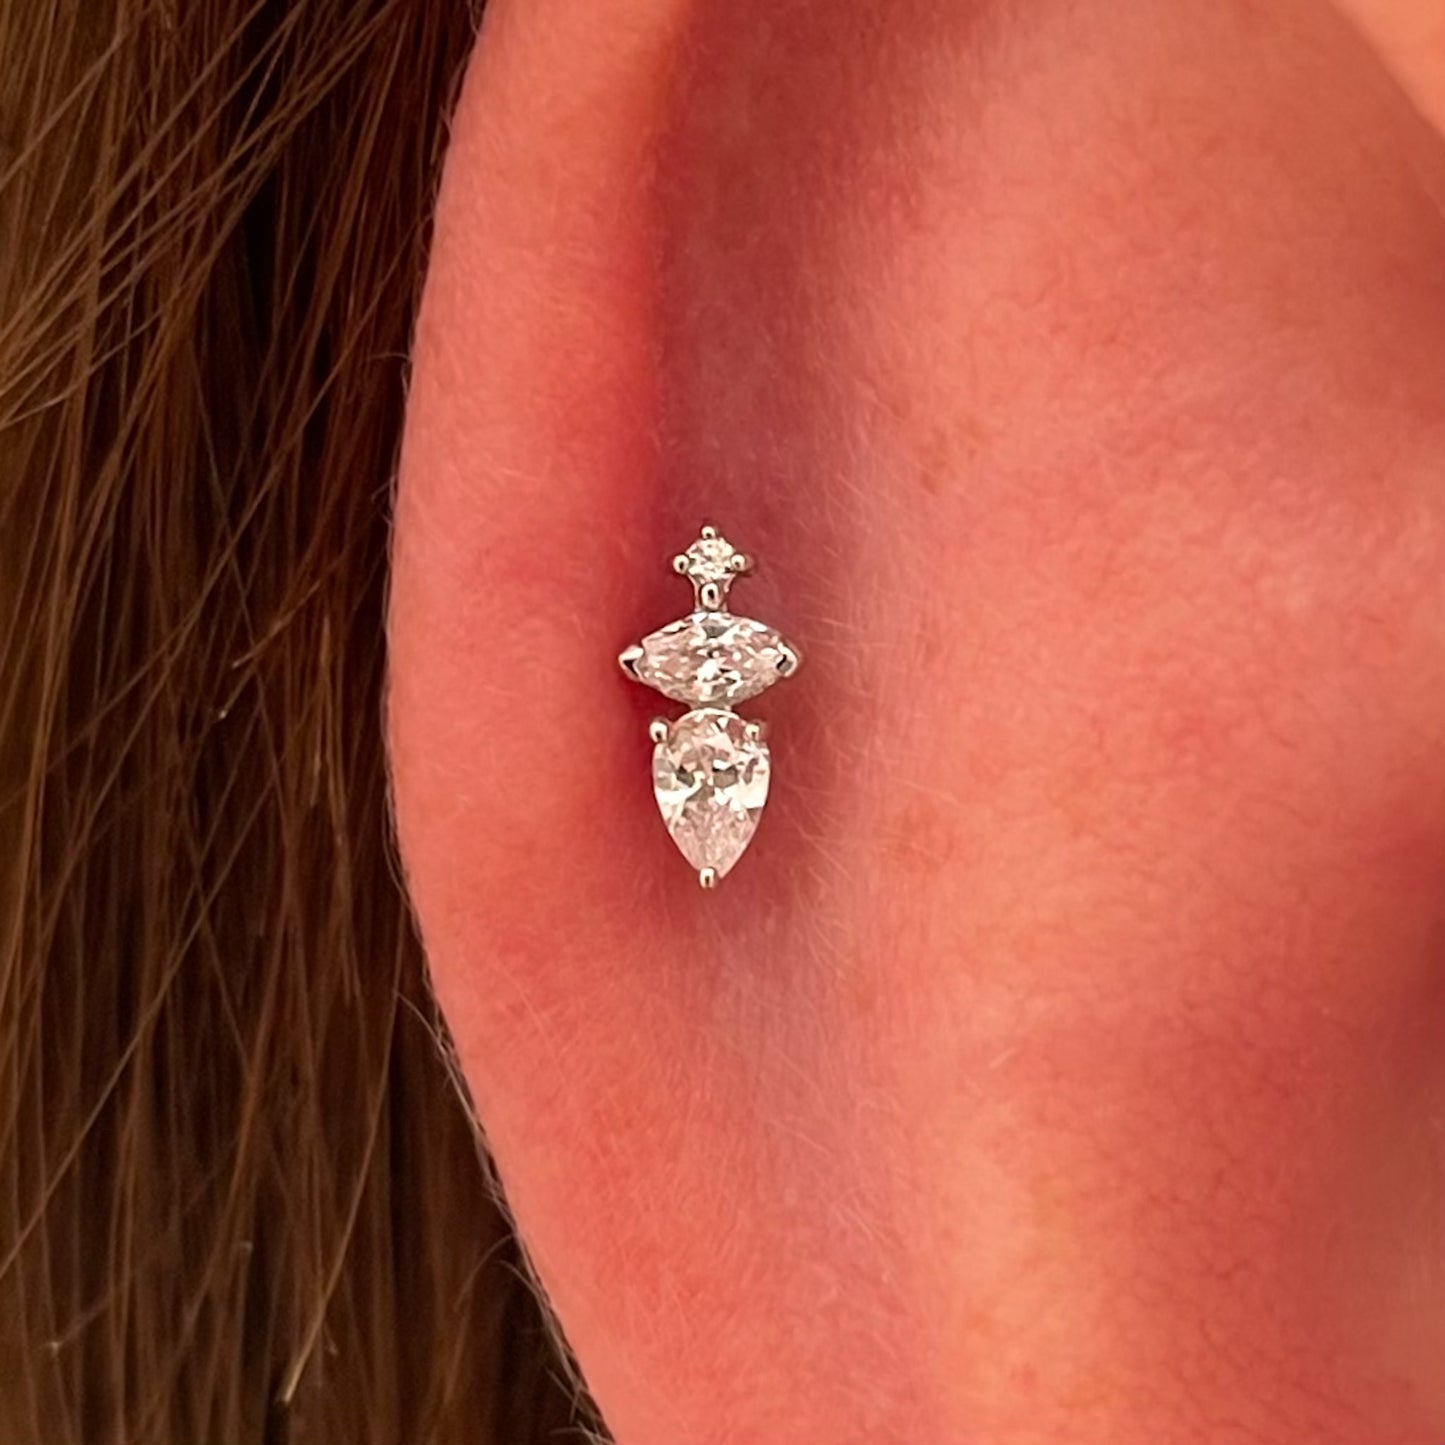 14k solid white gold Elsa flat back labret stud earring 8mm